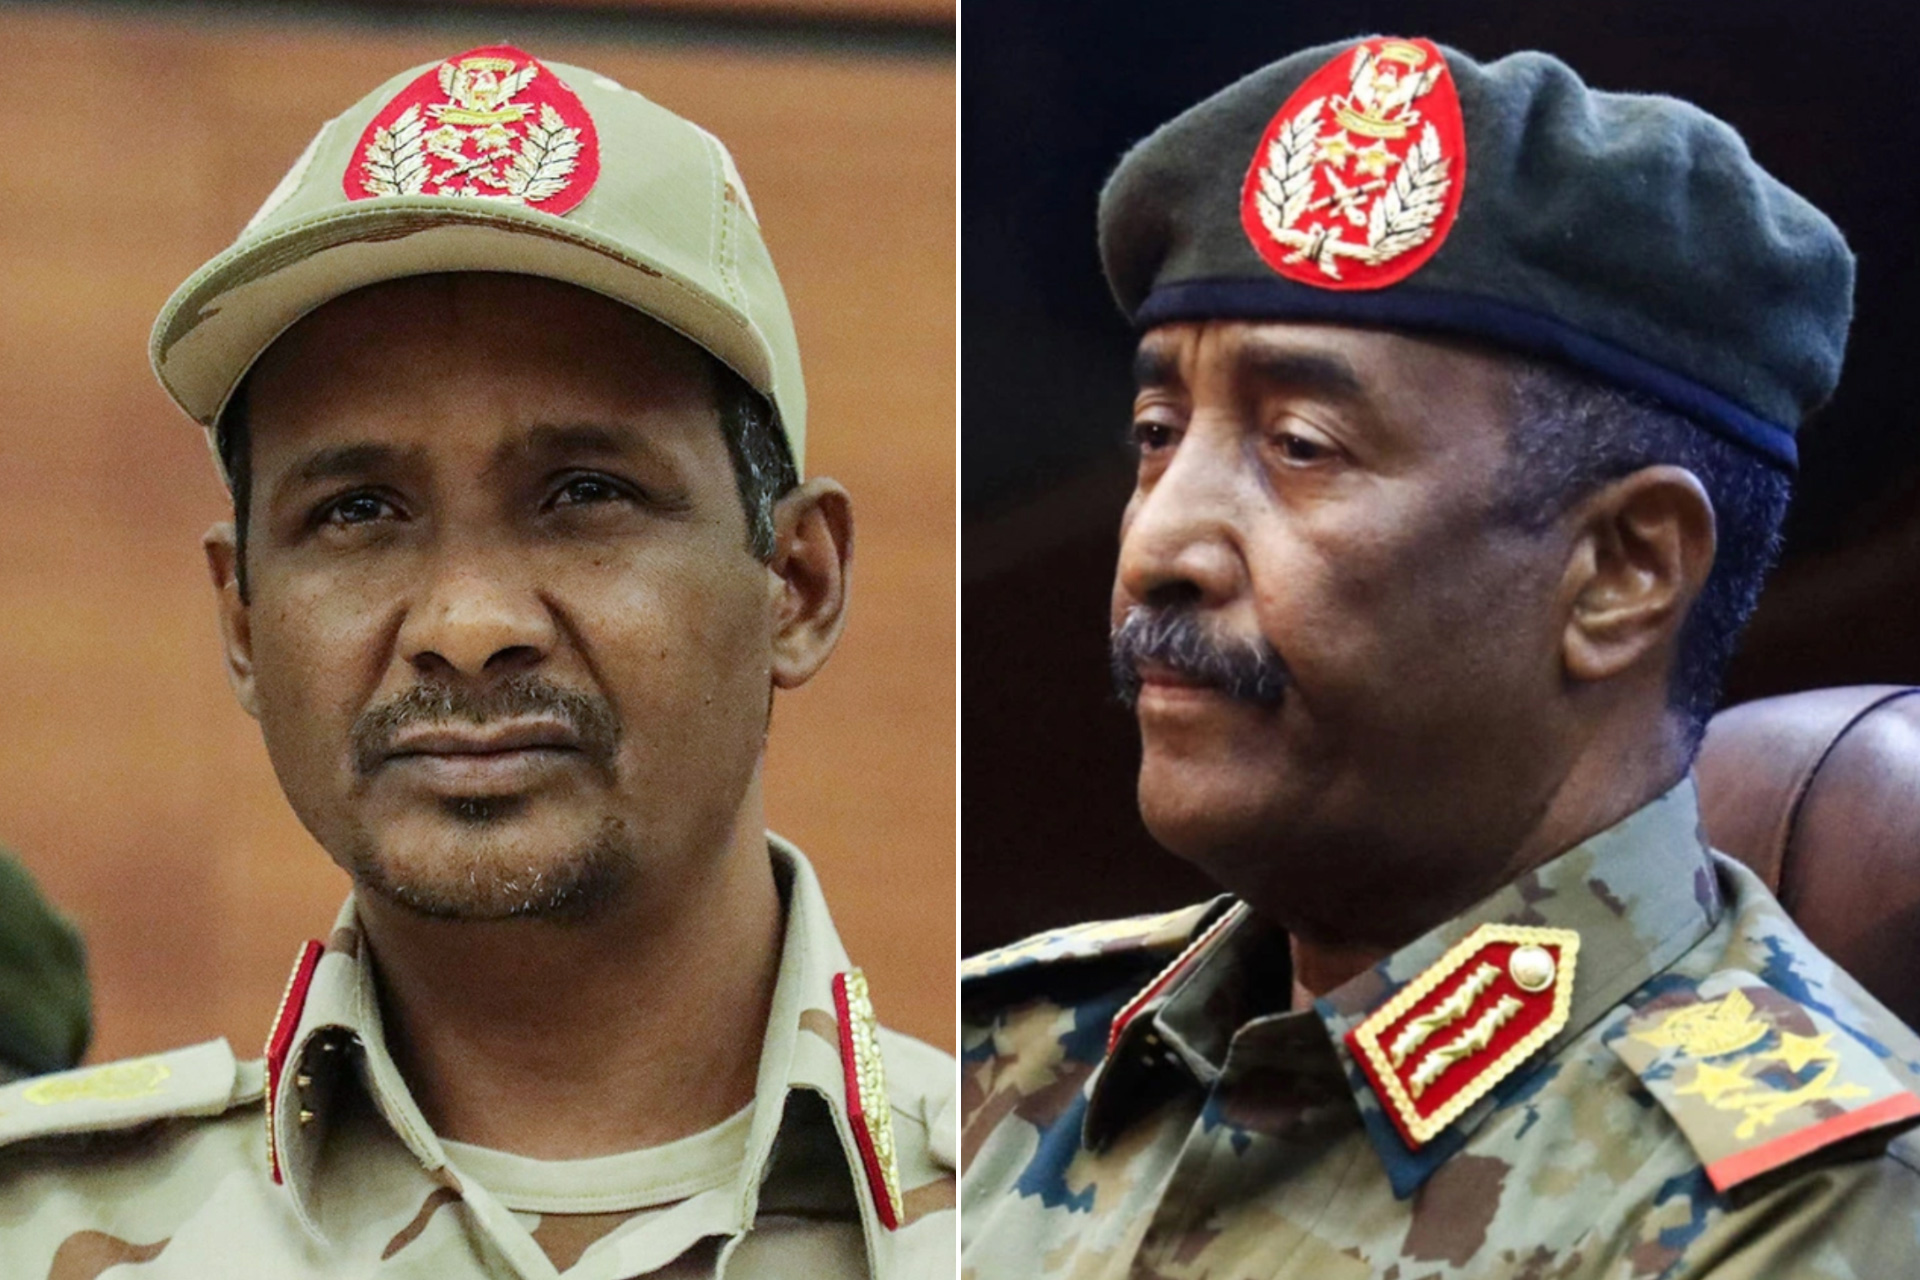 السودان.. هل يقود الانقسام السياسي إلى “عسكرة الدولة” والتدخل الأجنبي؟ | سياسة – البوكس نيوز